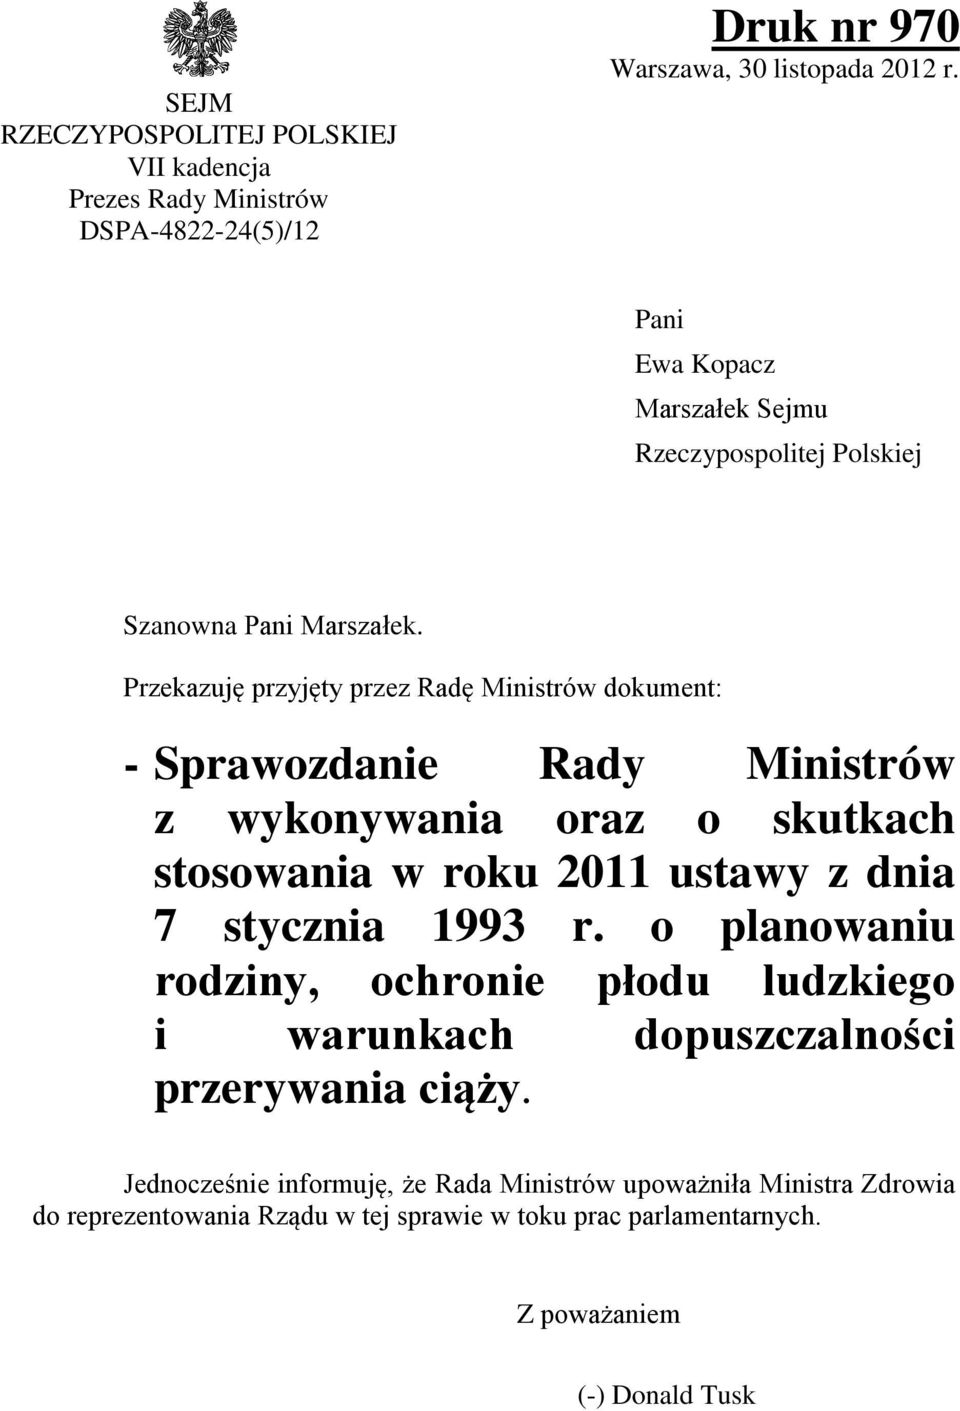 Przekazuję przyjęty przez Radę Ministrów dokument: - Sprawozdanie Rady Ministrów z wykonywania oraz o skutkach stosowania w roku 2011 ustawy z dnia 7 stycznia